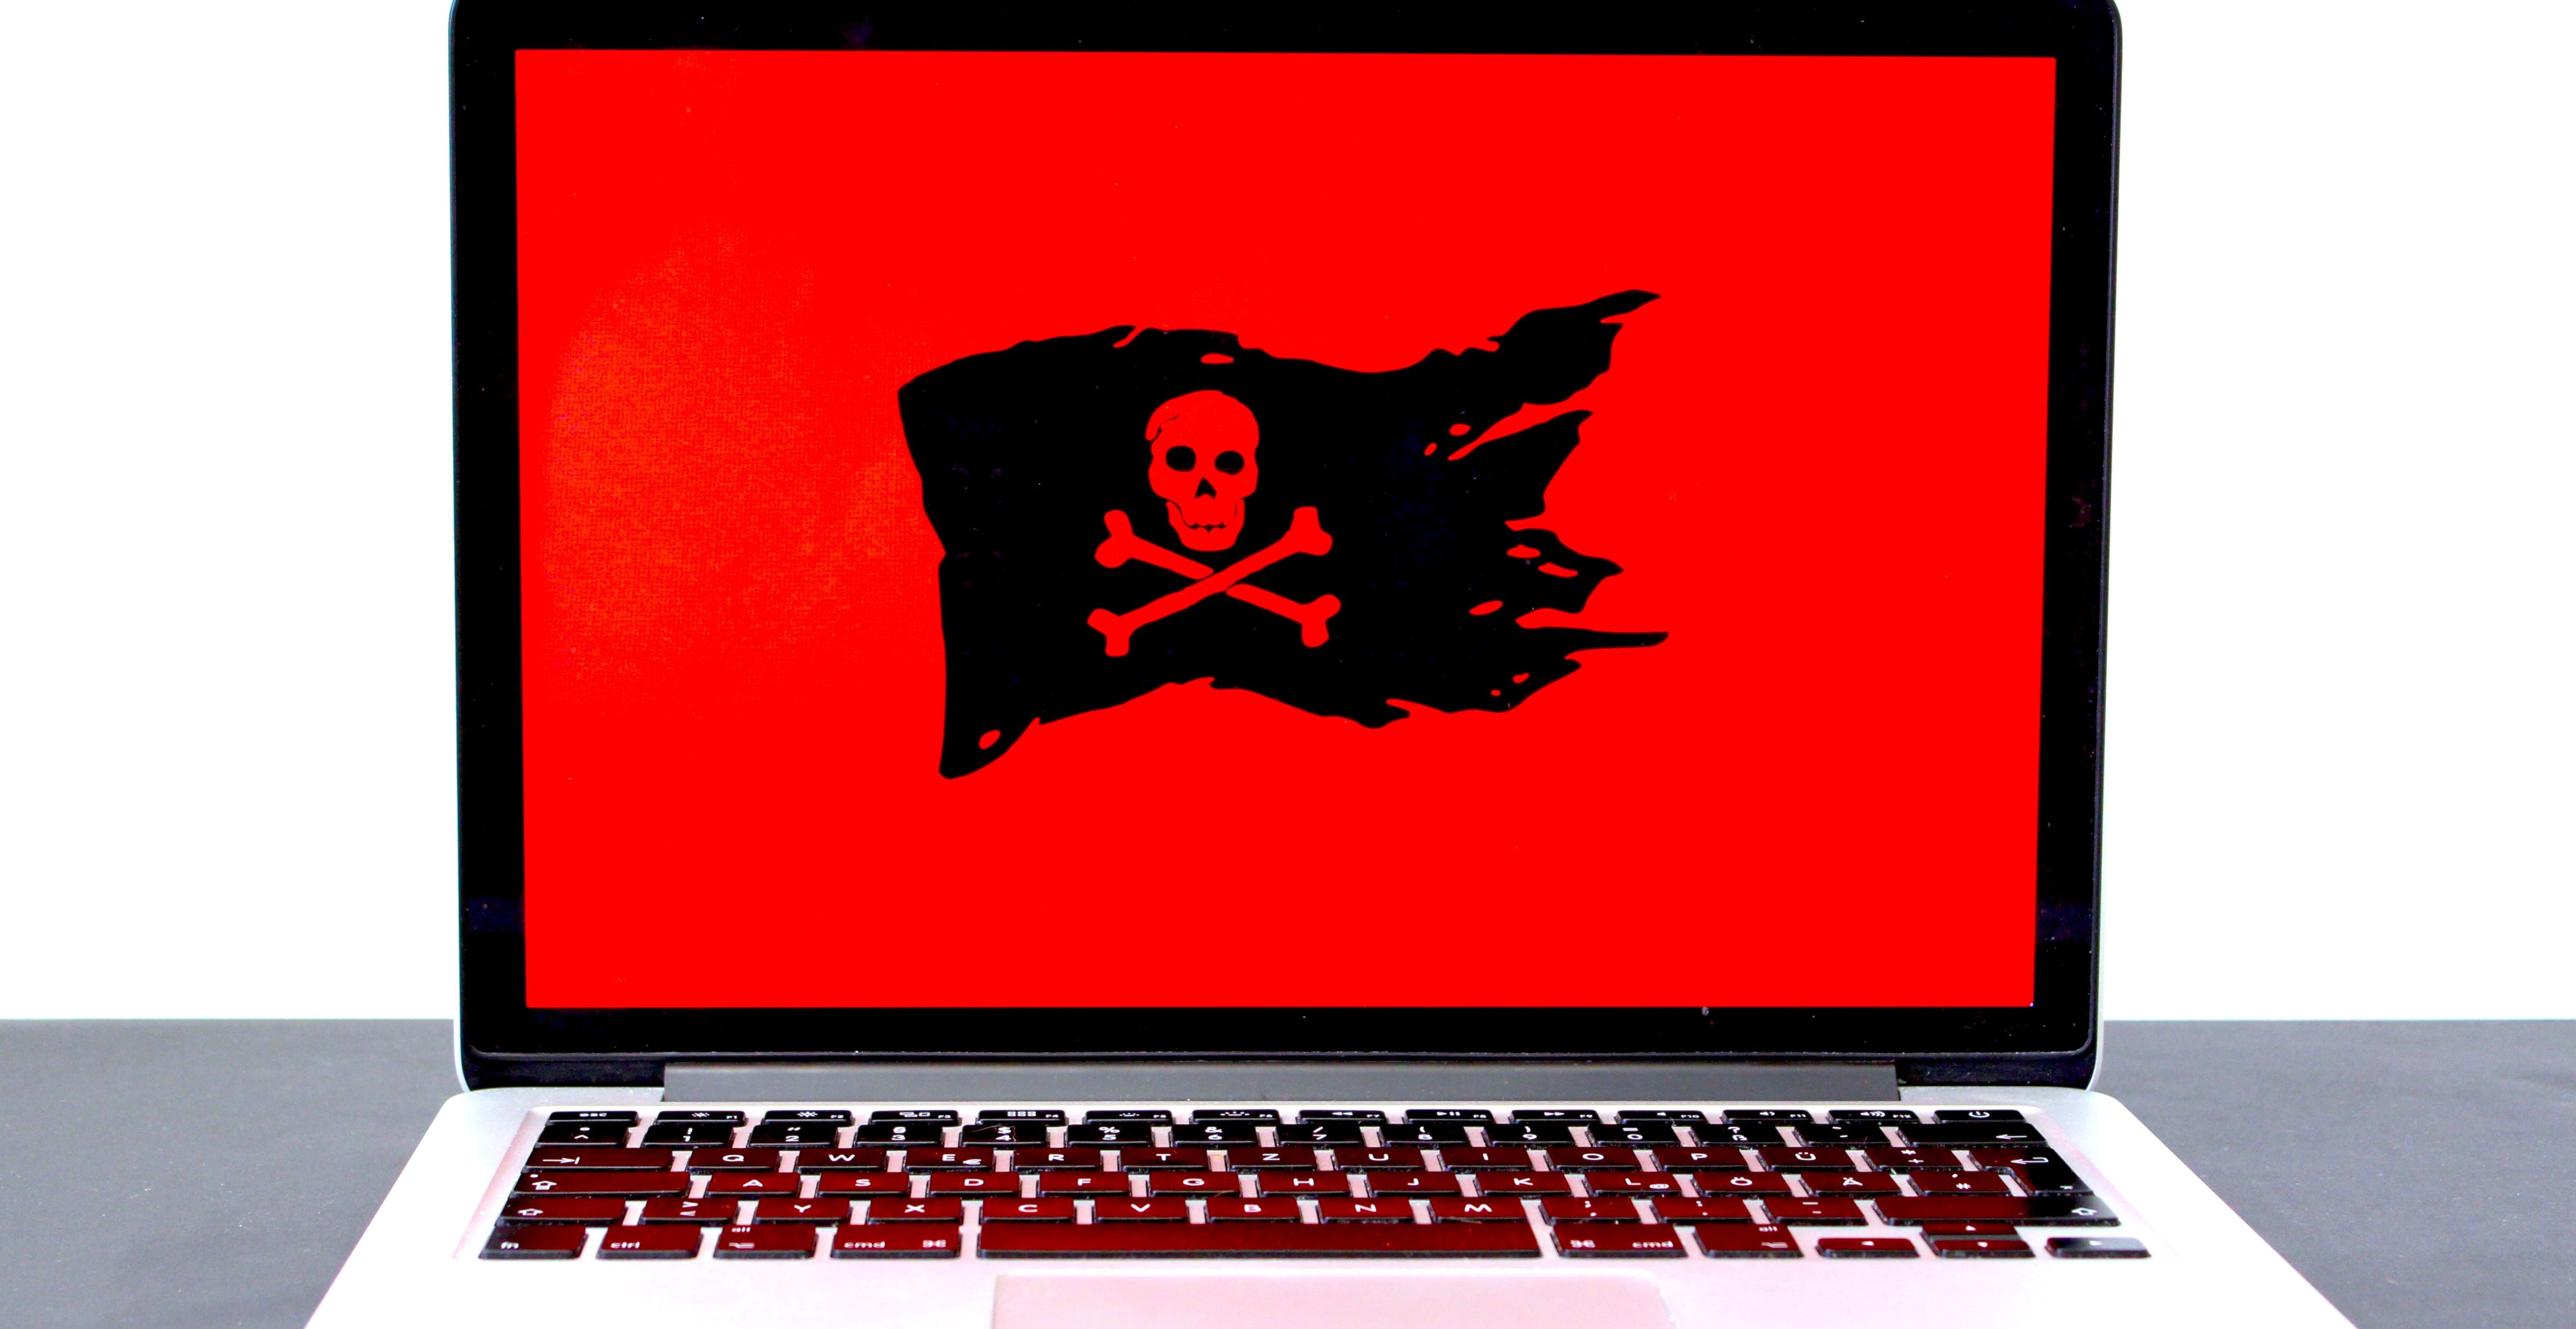 red skull flag on laptop screen 